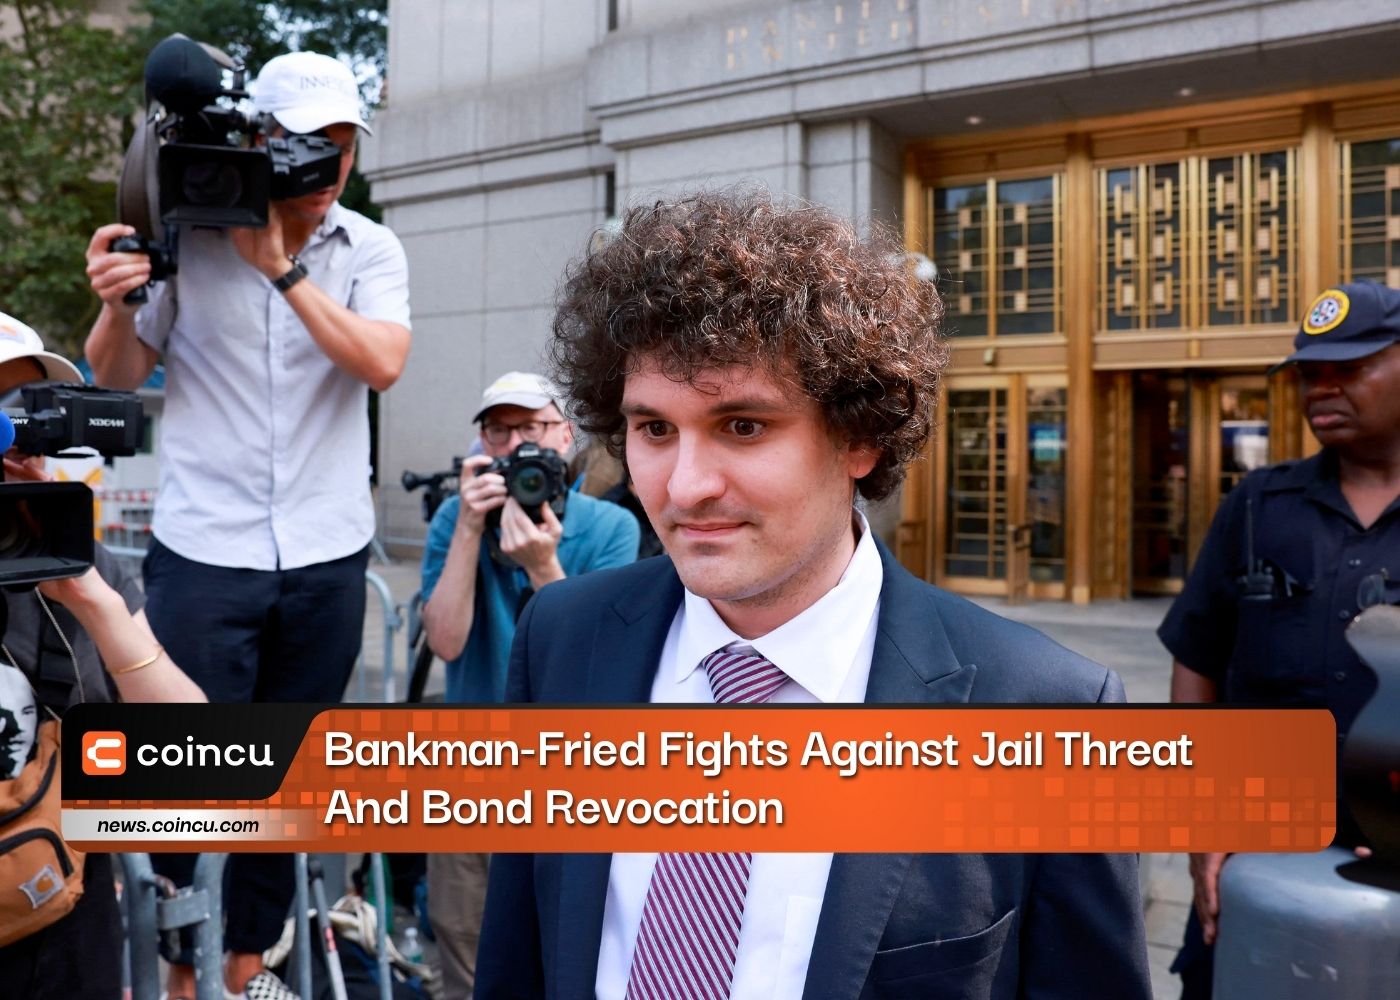 Bankman-Fried chiến đấu chống lại mối đe dọa bỏ tù và thu hồi trái phiếu